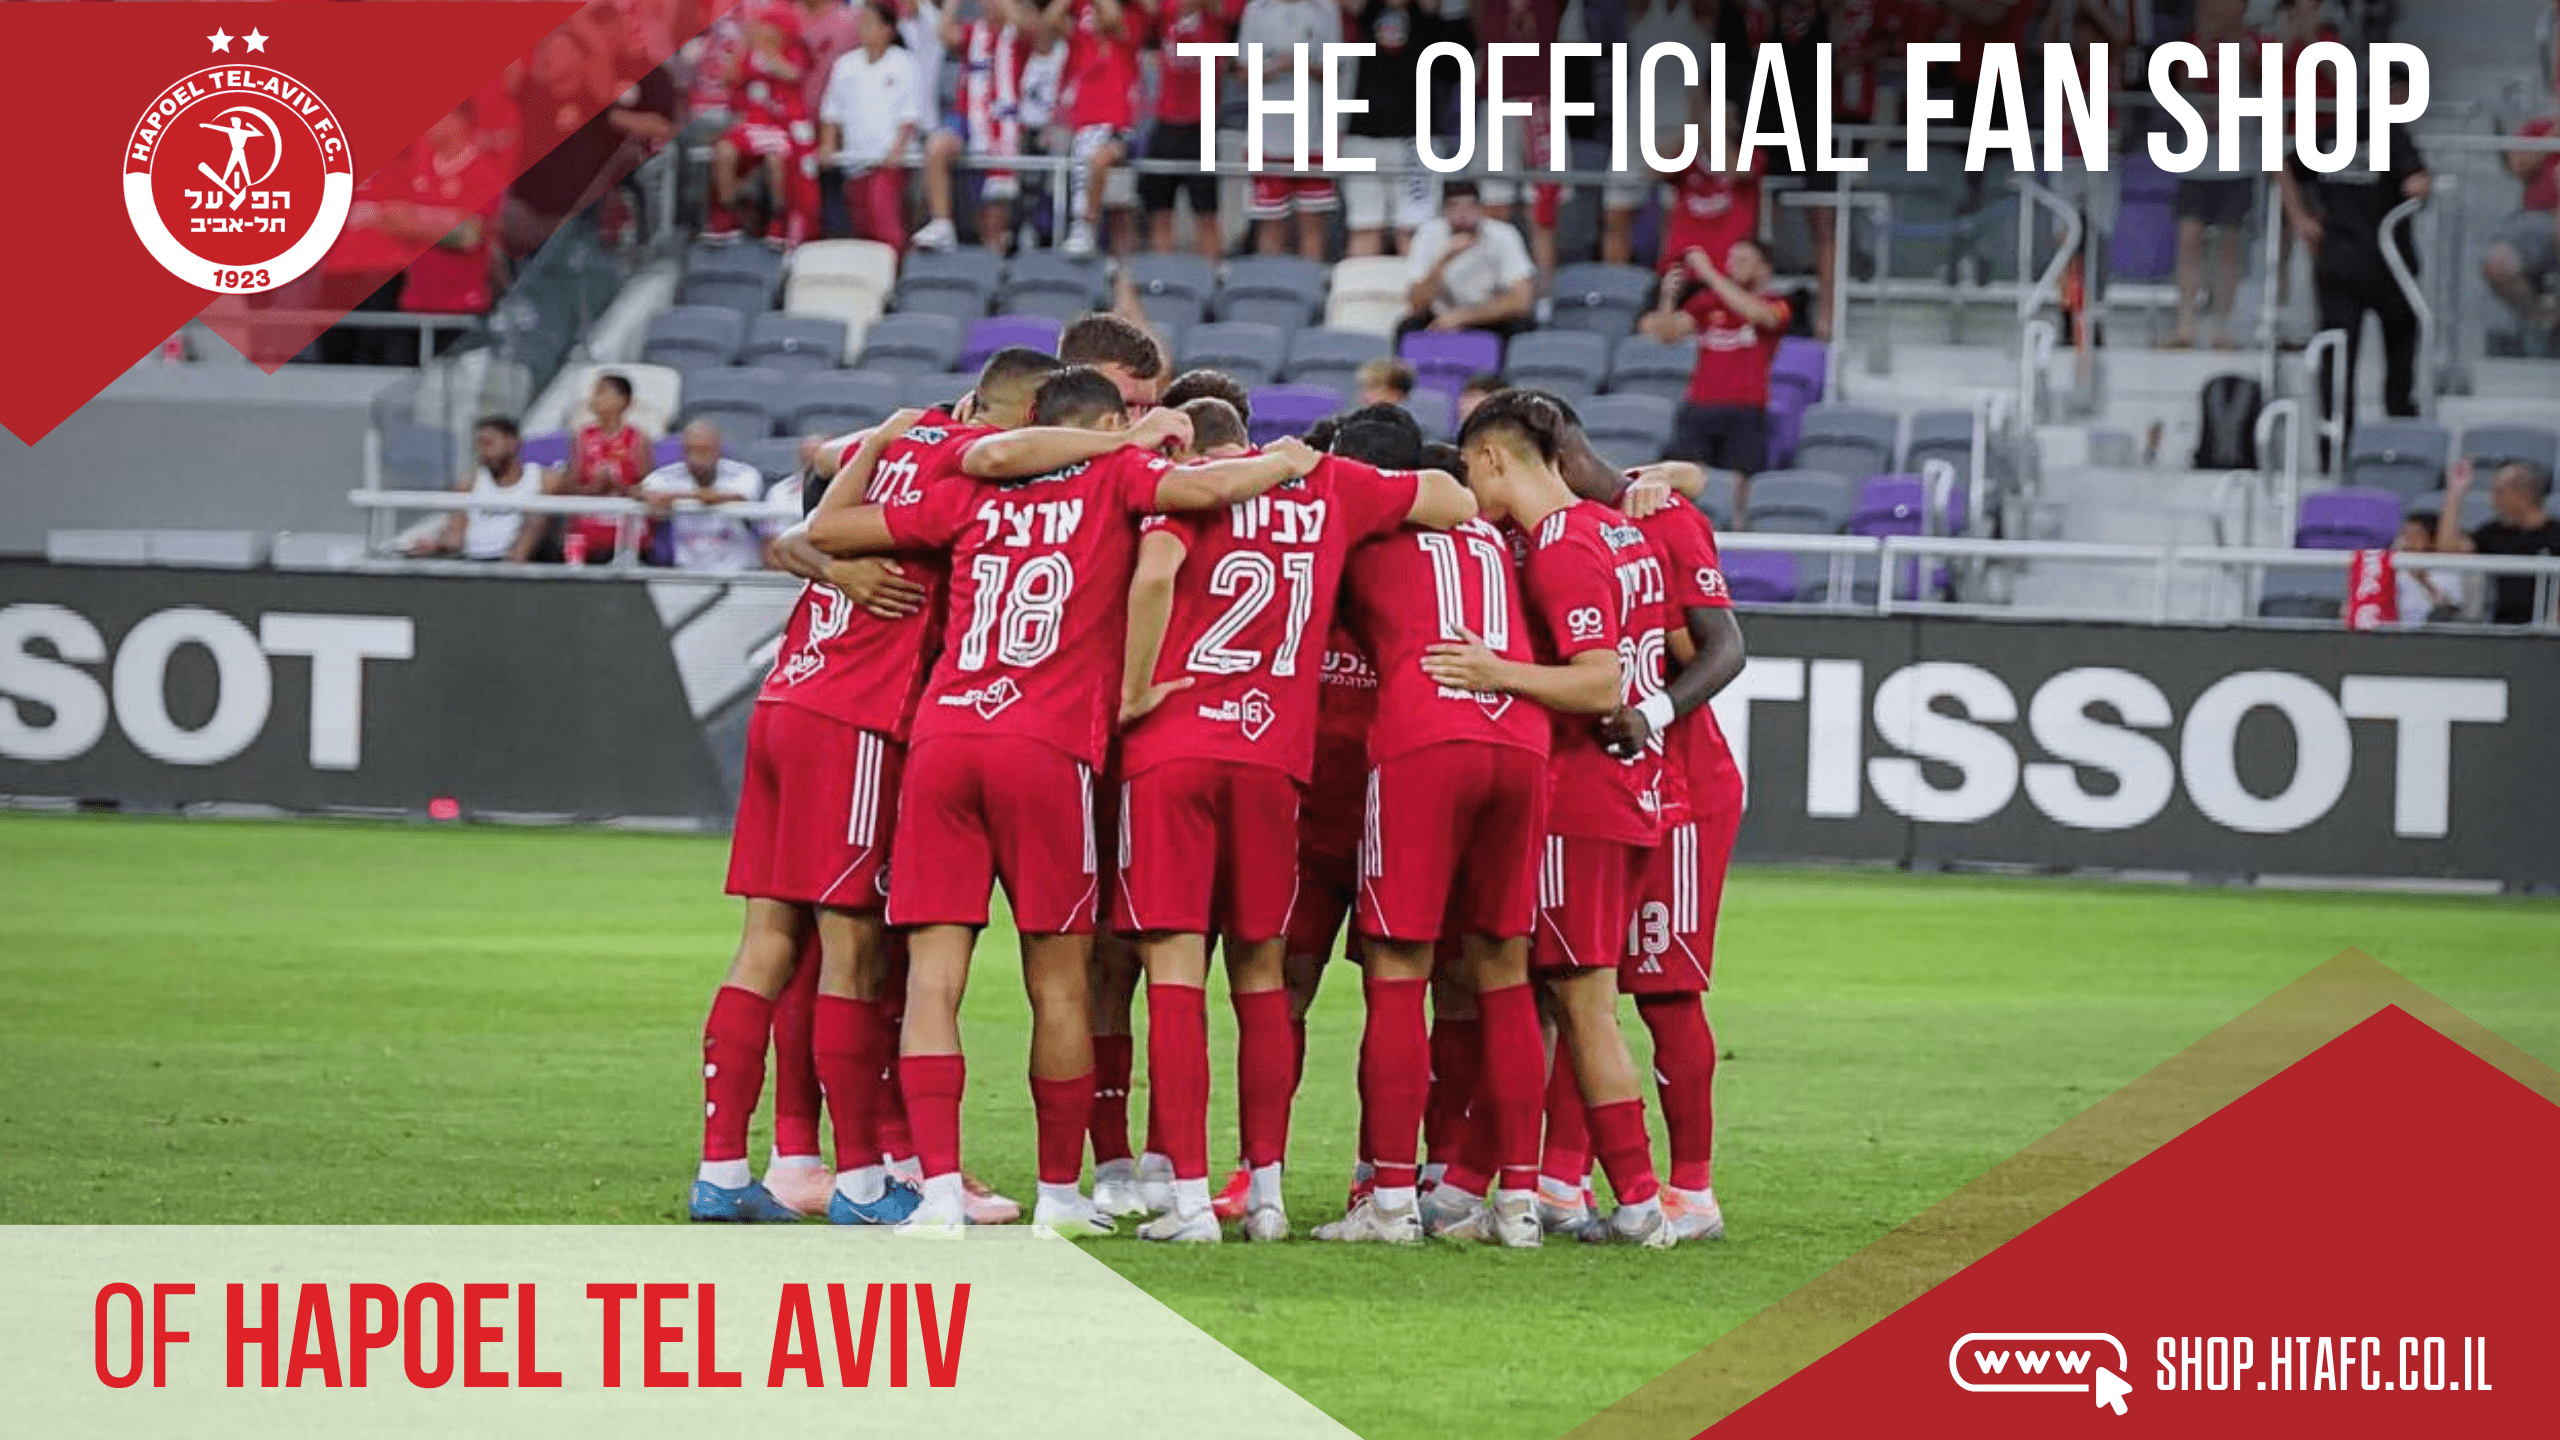 Hapoel Tel Aviv football team